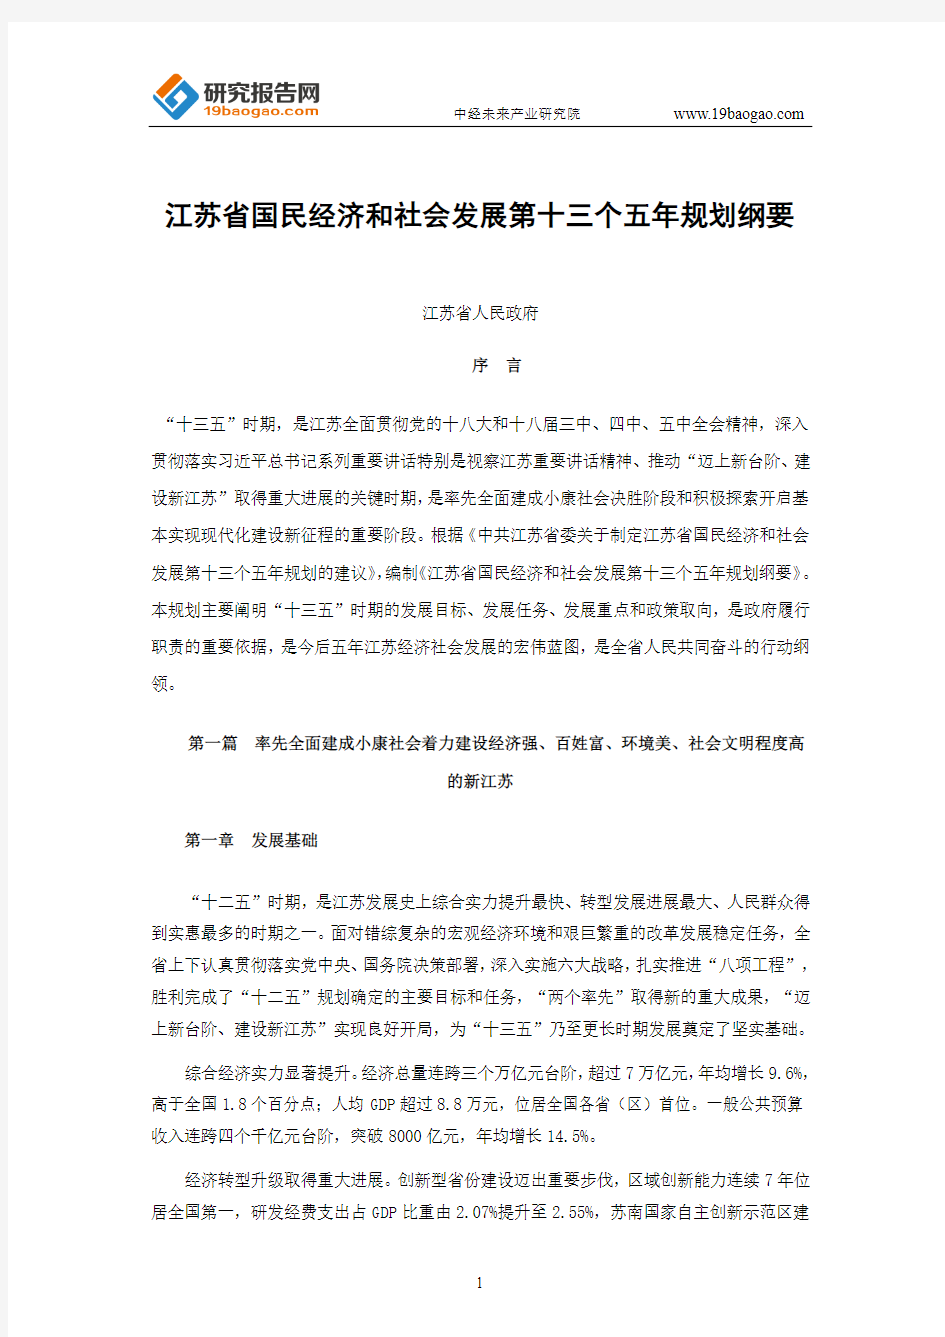 江苏省国民经济和社会发展第十三个五年规划纲要